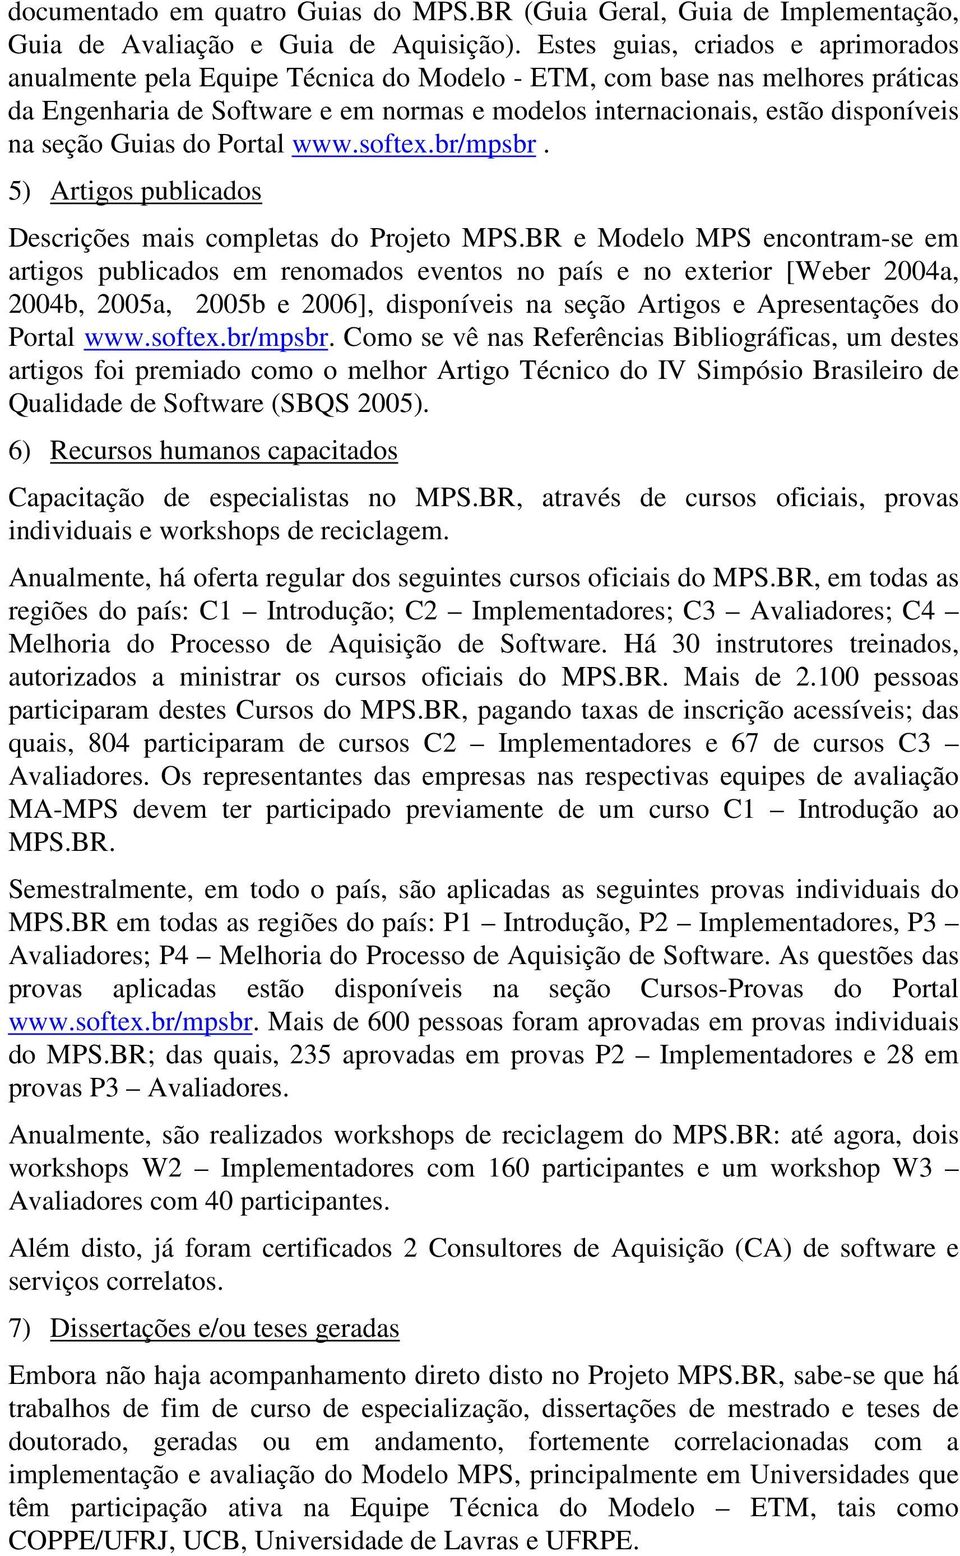 seção Guias do Portal www.softex.br/mpsbr. 5) Artigos publicados Descrições mais completas do Projeto MPS.